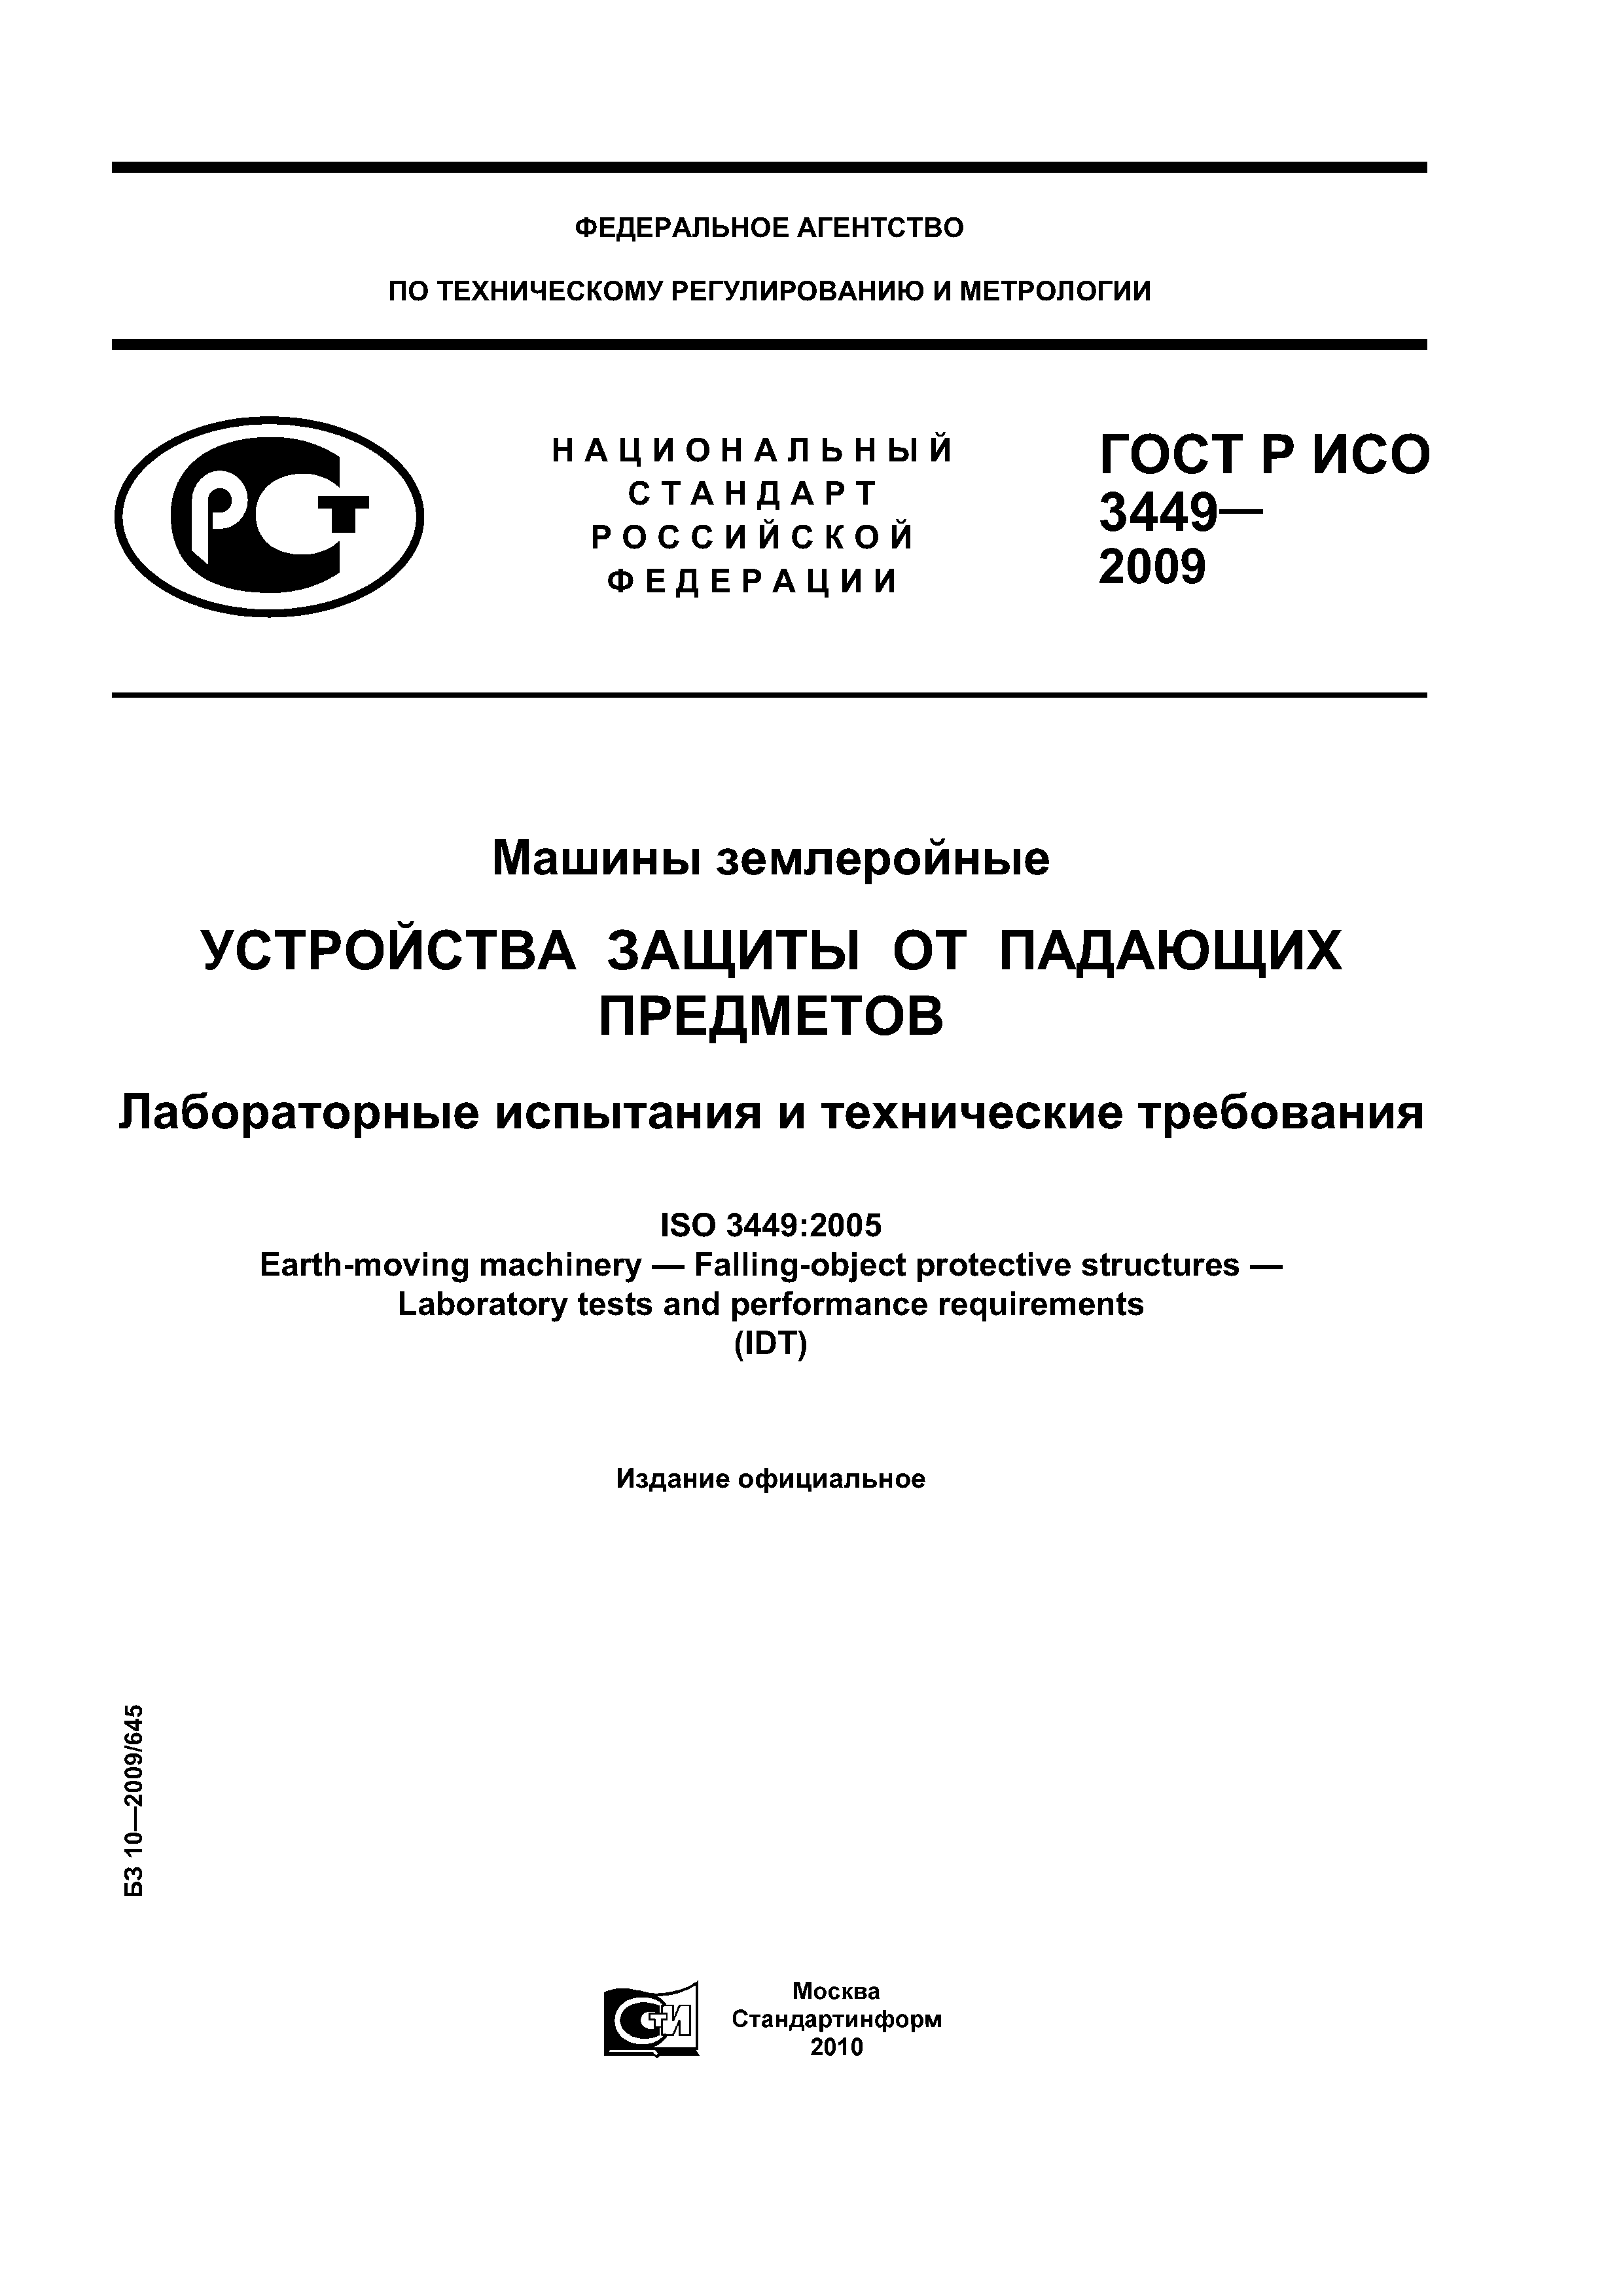 ГОСТ Р ИСО 3449-2009